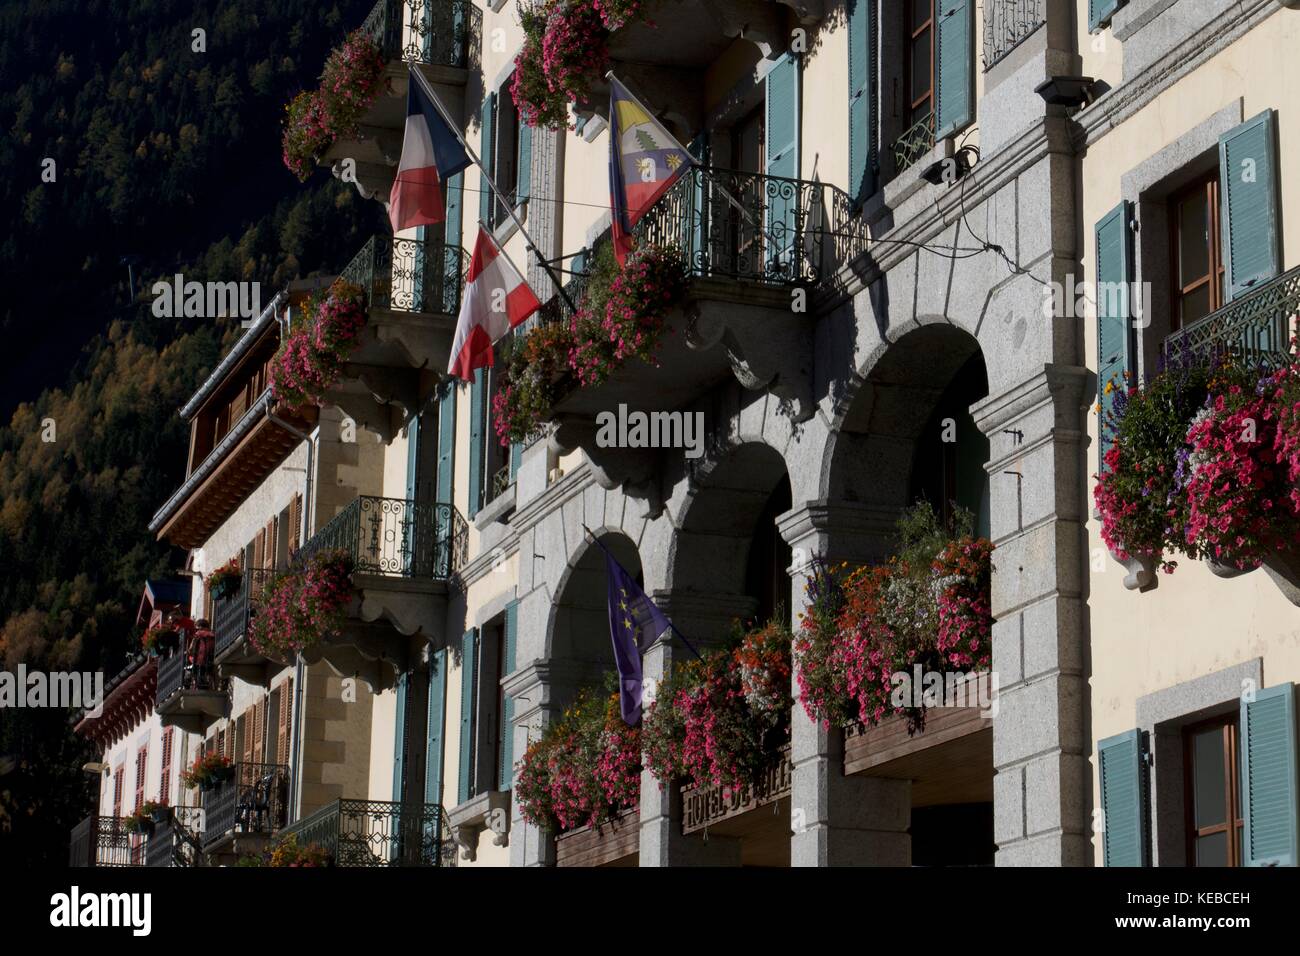 Détail de l'hôtel façade avec fenêtres à fleurs et drapeaux français et suisse, chamonix-mont-blanc, france Banque D'Images